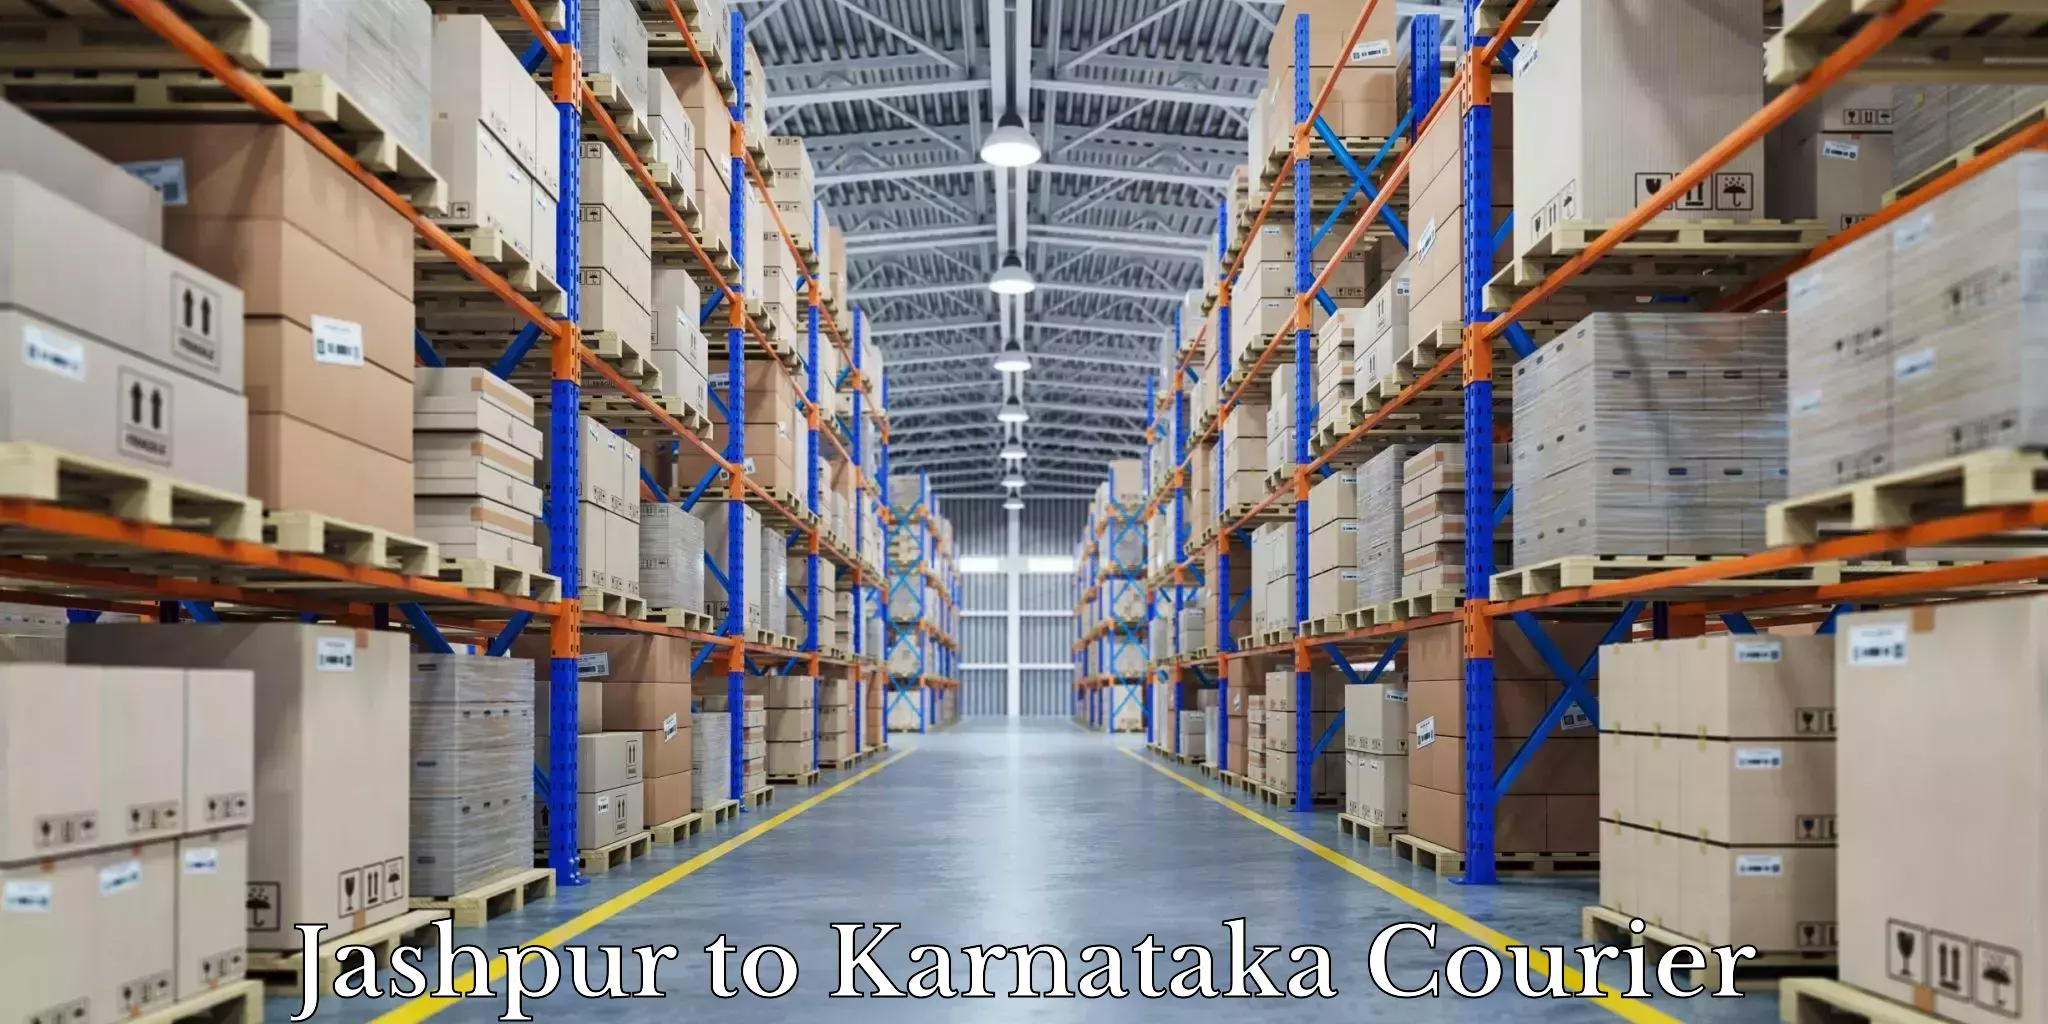 Expert goods movers Jashpur to Kanakapura